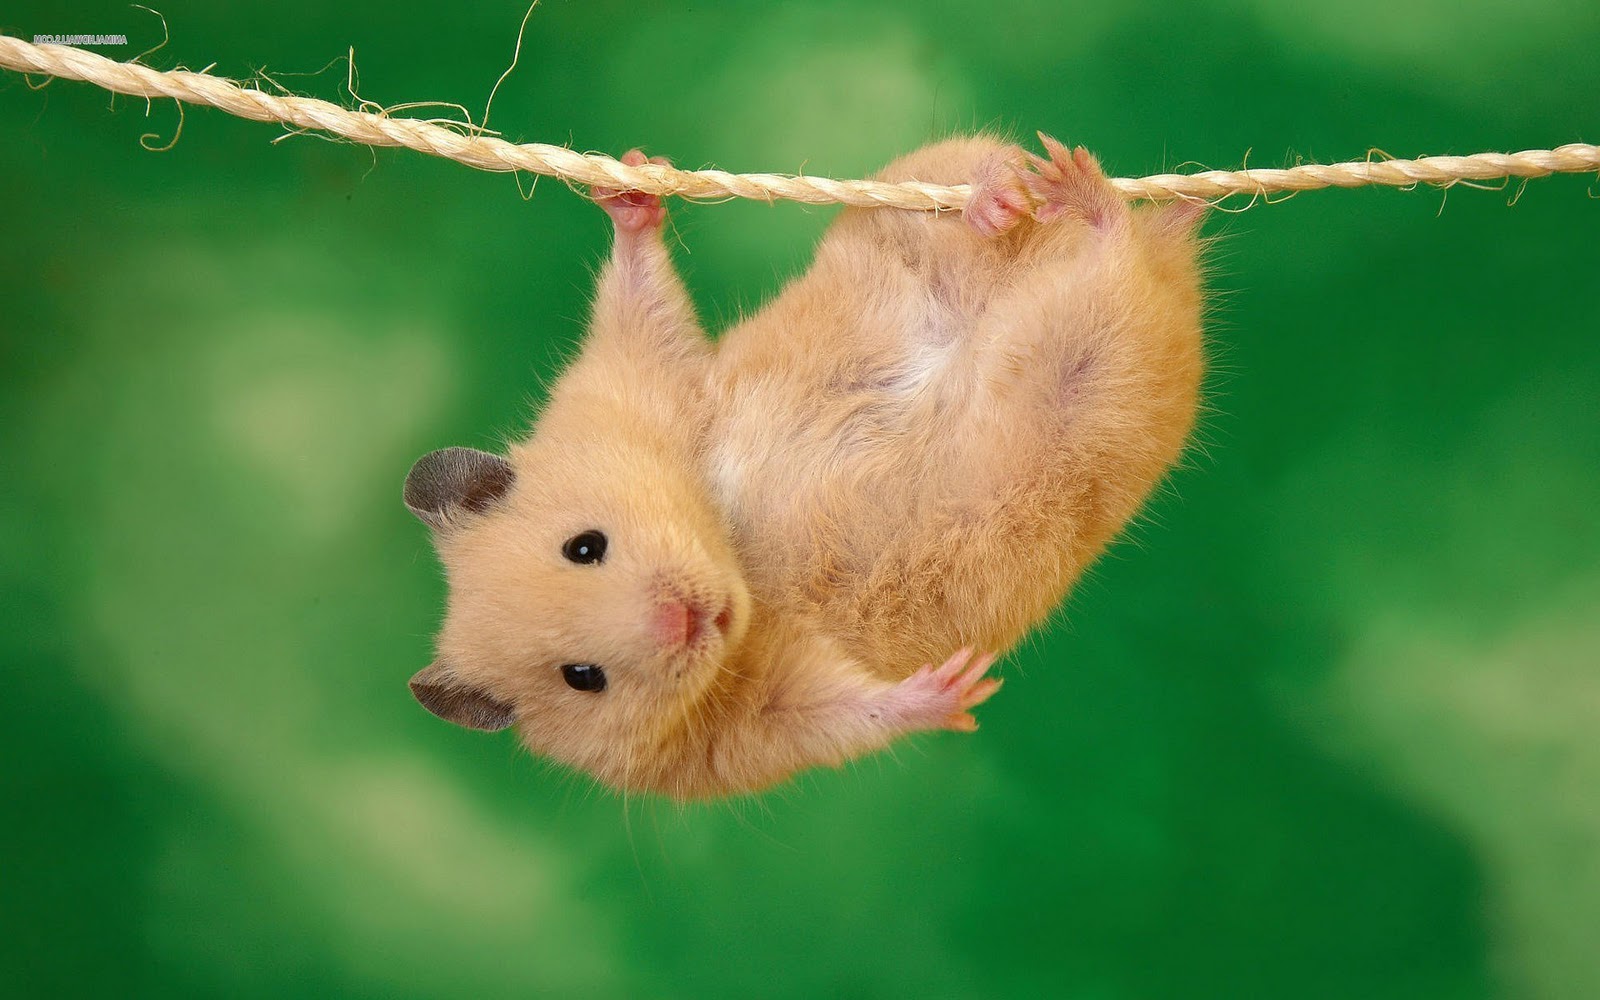 Hamsters achtergronden dieren hd hamster wallpapers foto 9jpg